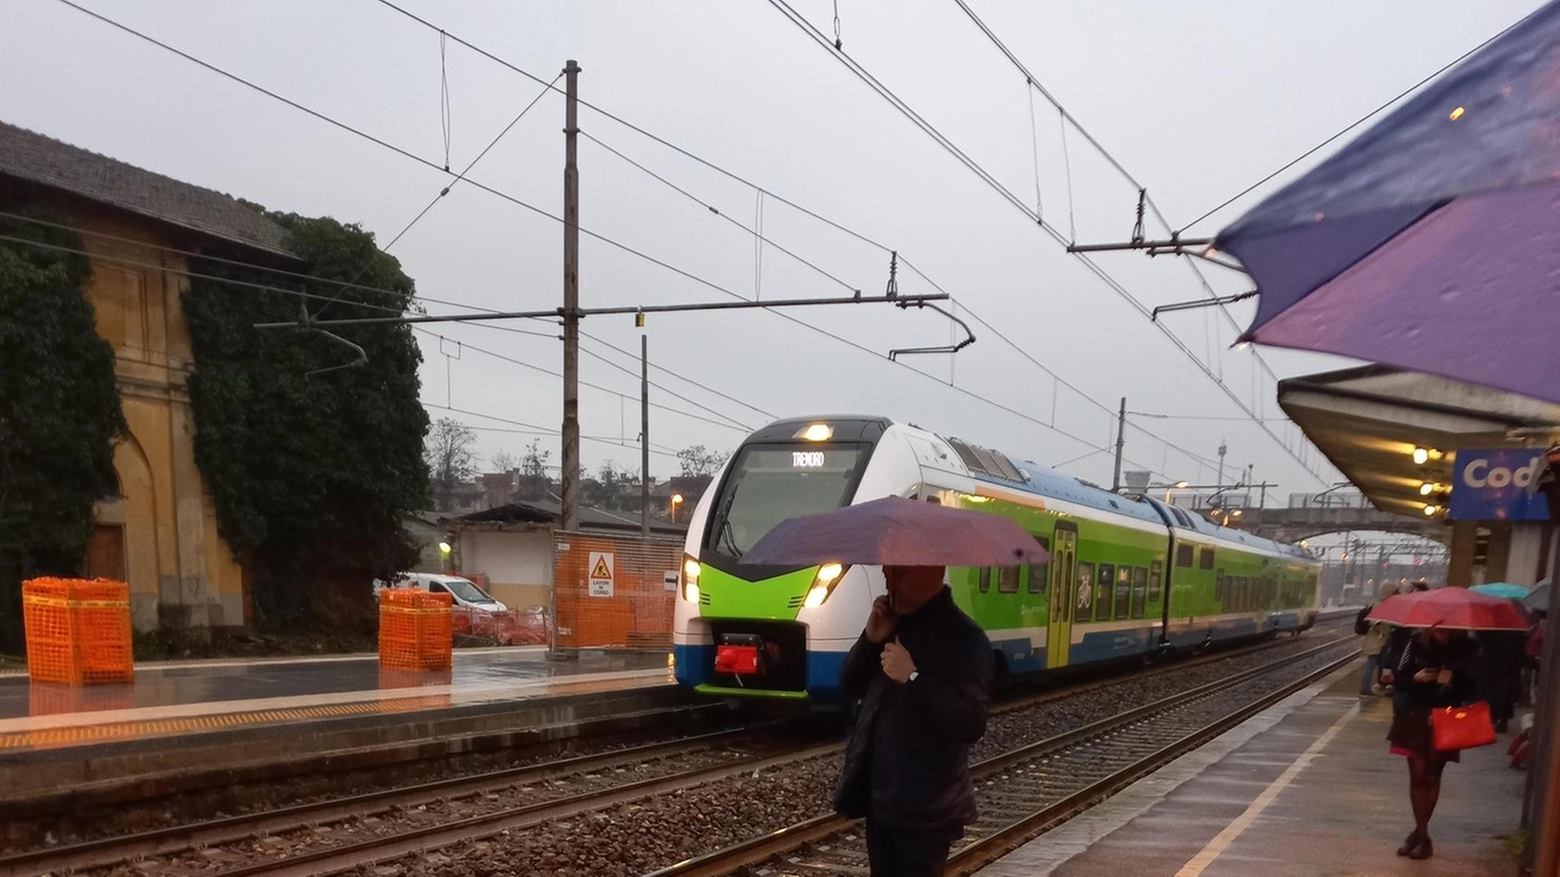 Guasto sulla linea ferroviaria a Tavazzano con Villavesco causa ritardi e cancellazioni, complicando la giornata dei viaggiatori già penalizzati dallo sciopero Cobas. Situatione risolta dopo tre ore di intervento dei tecnici.